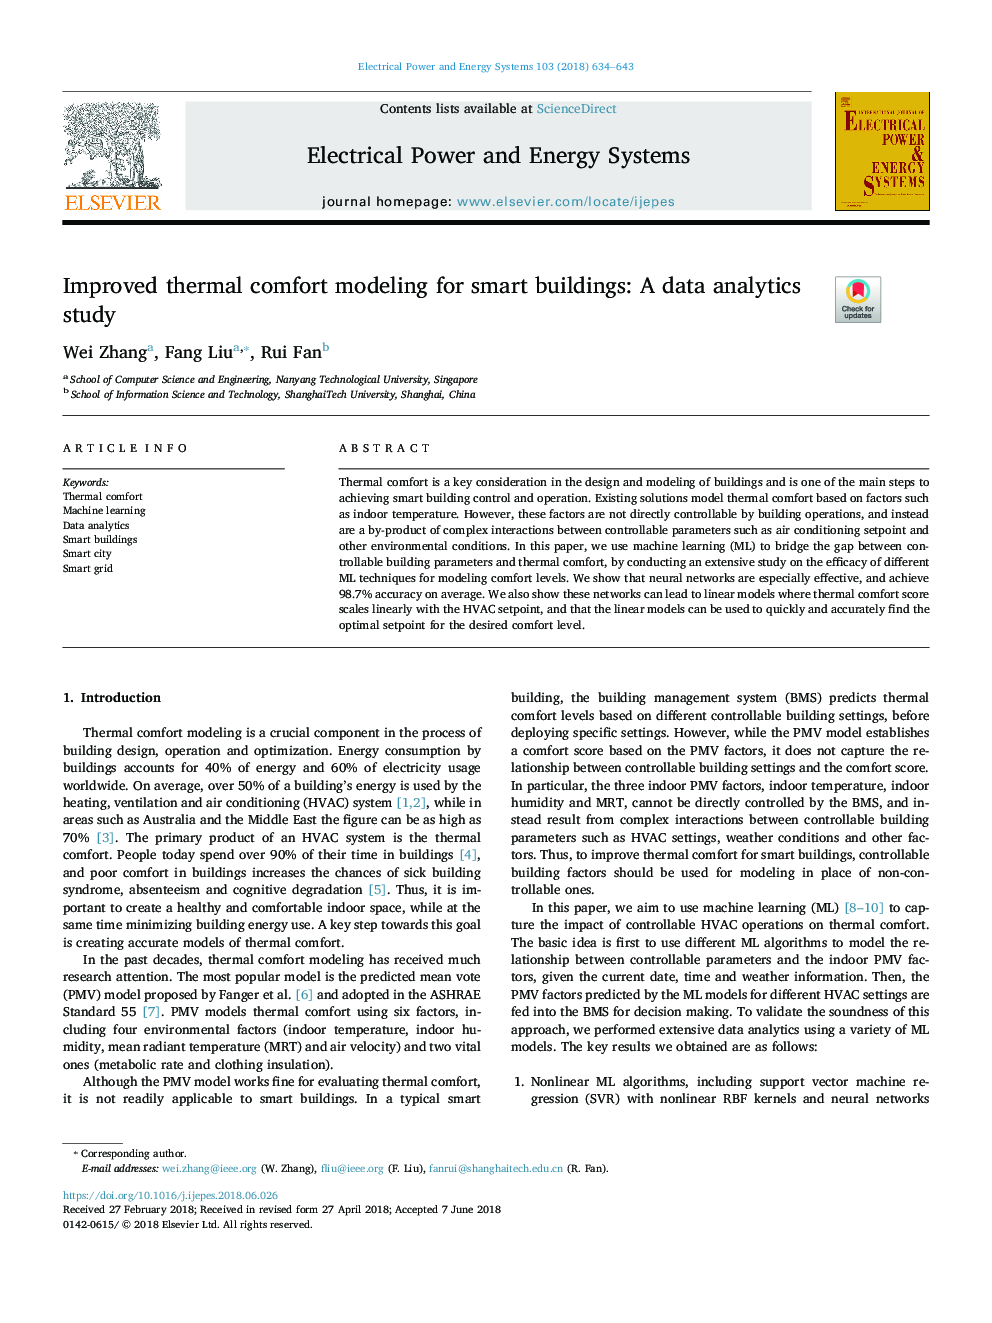 مدلسازی راحتی حرارتی برای ساختمان های هوشمند بهبود یافته: یک مطالعه تحلیلی داده ها 